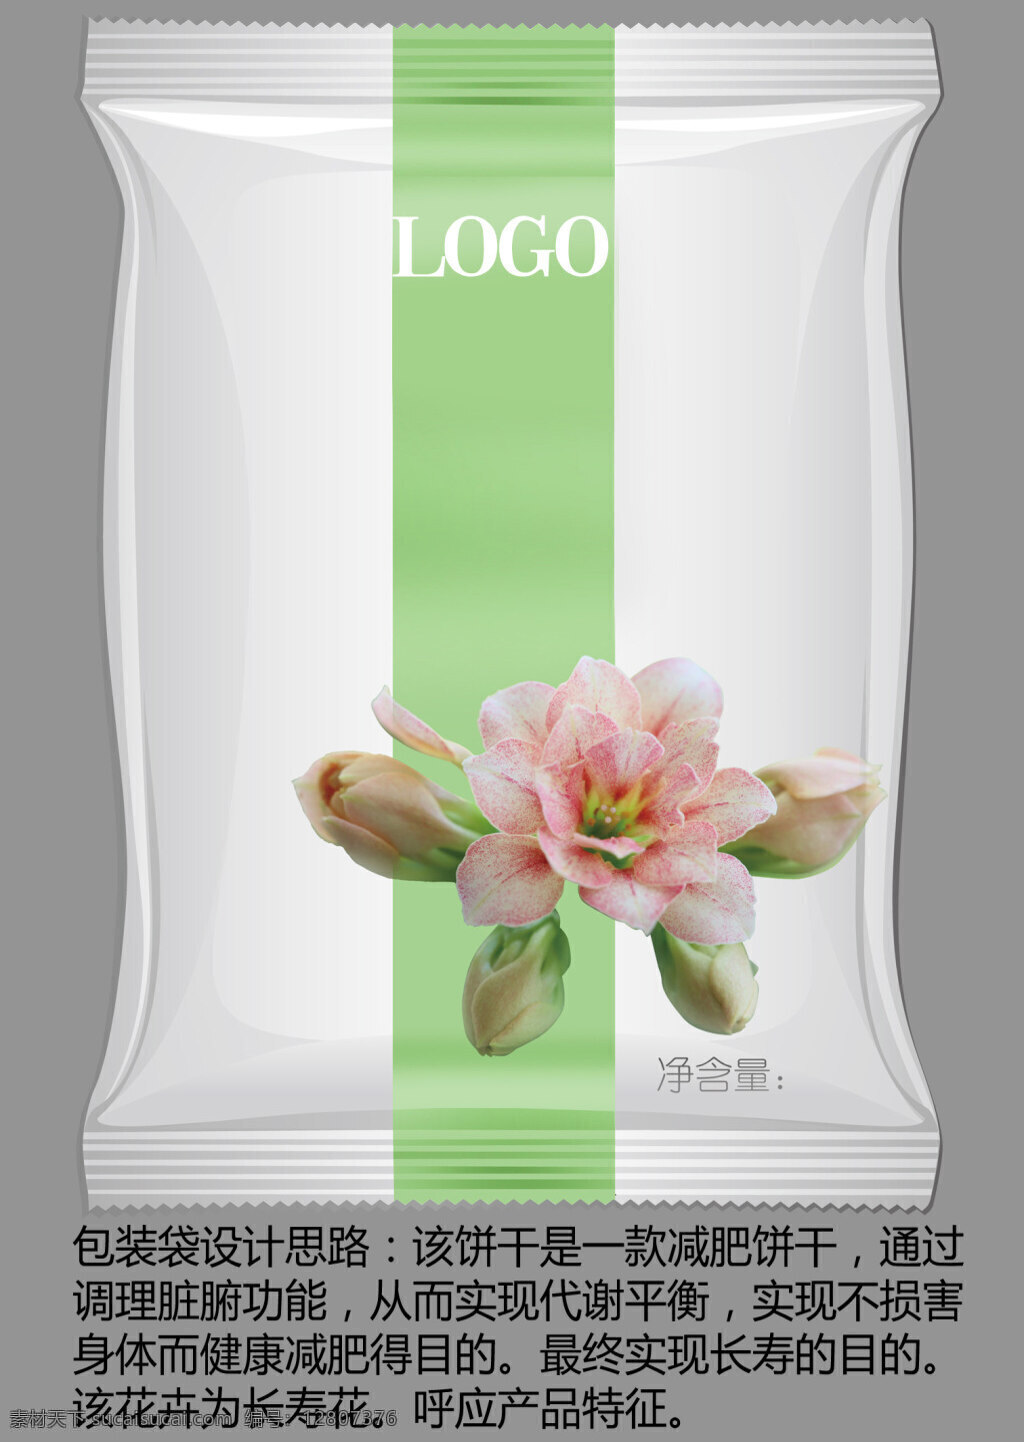 旨 脂 寿 包装袋 定稿 旨脂寿包装袋 ai格式 用于 包装 带 减肥产品 保健食品 应用 小清 新包 装袋